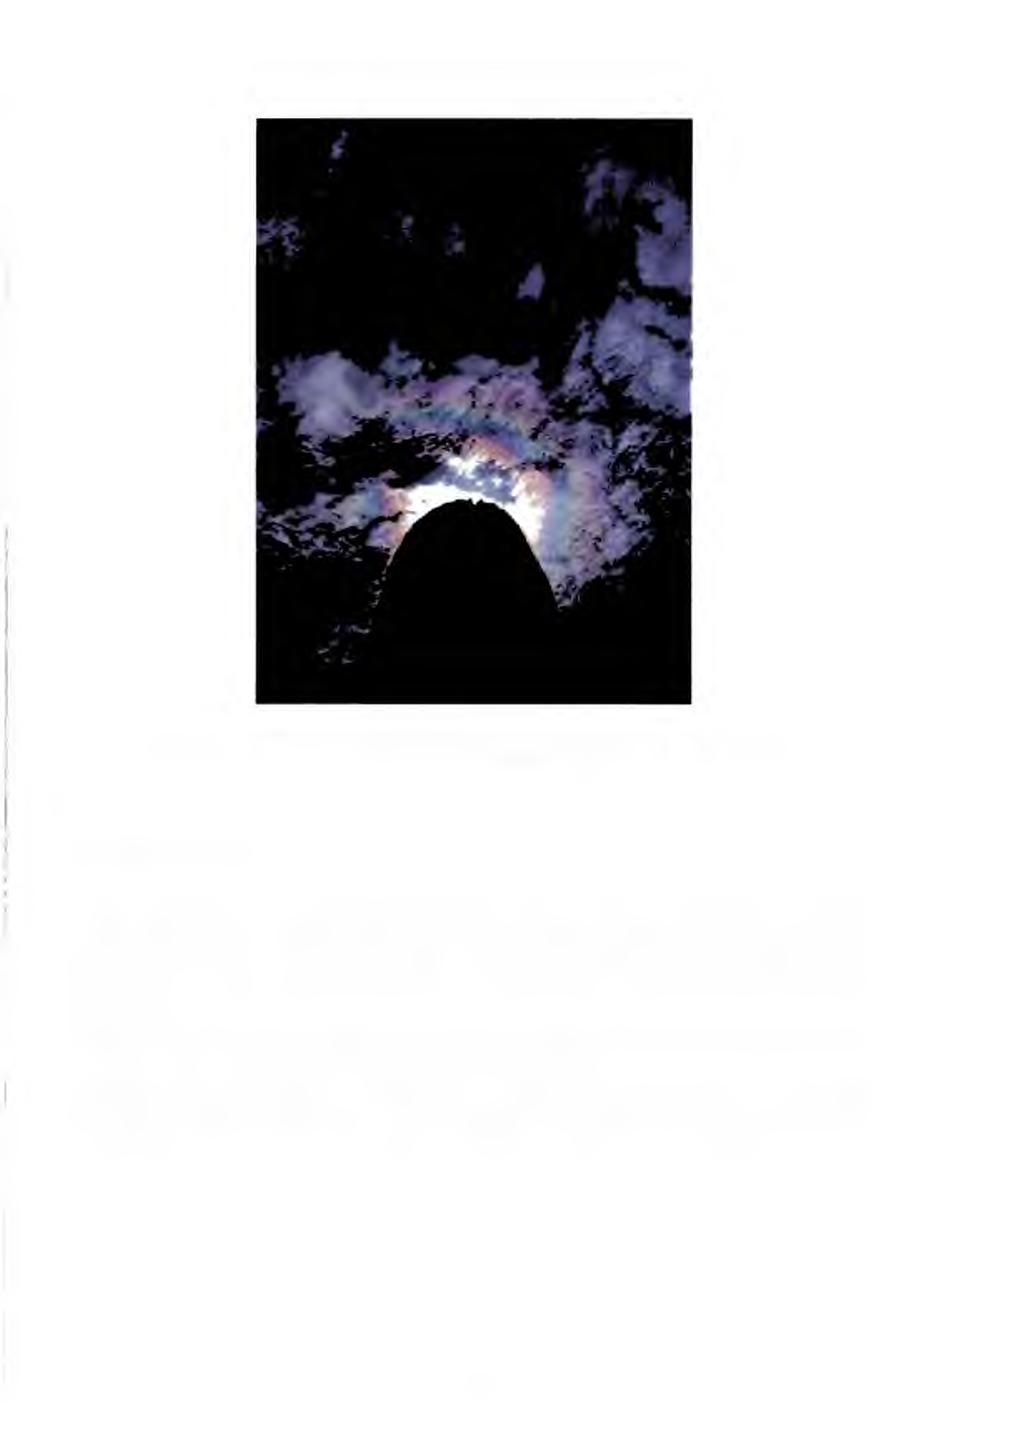 Obr. č. 3.7 - Irizace mraků. Národní park Saguaro (Arizona, USA), 8.9.1999 (Bernhard Mühr, převzato z [9]) 3.